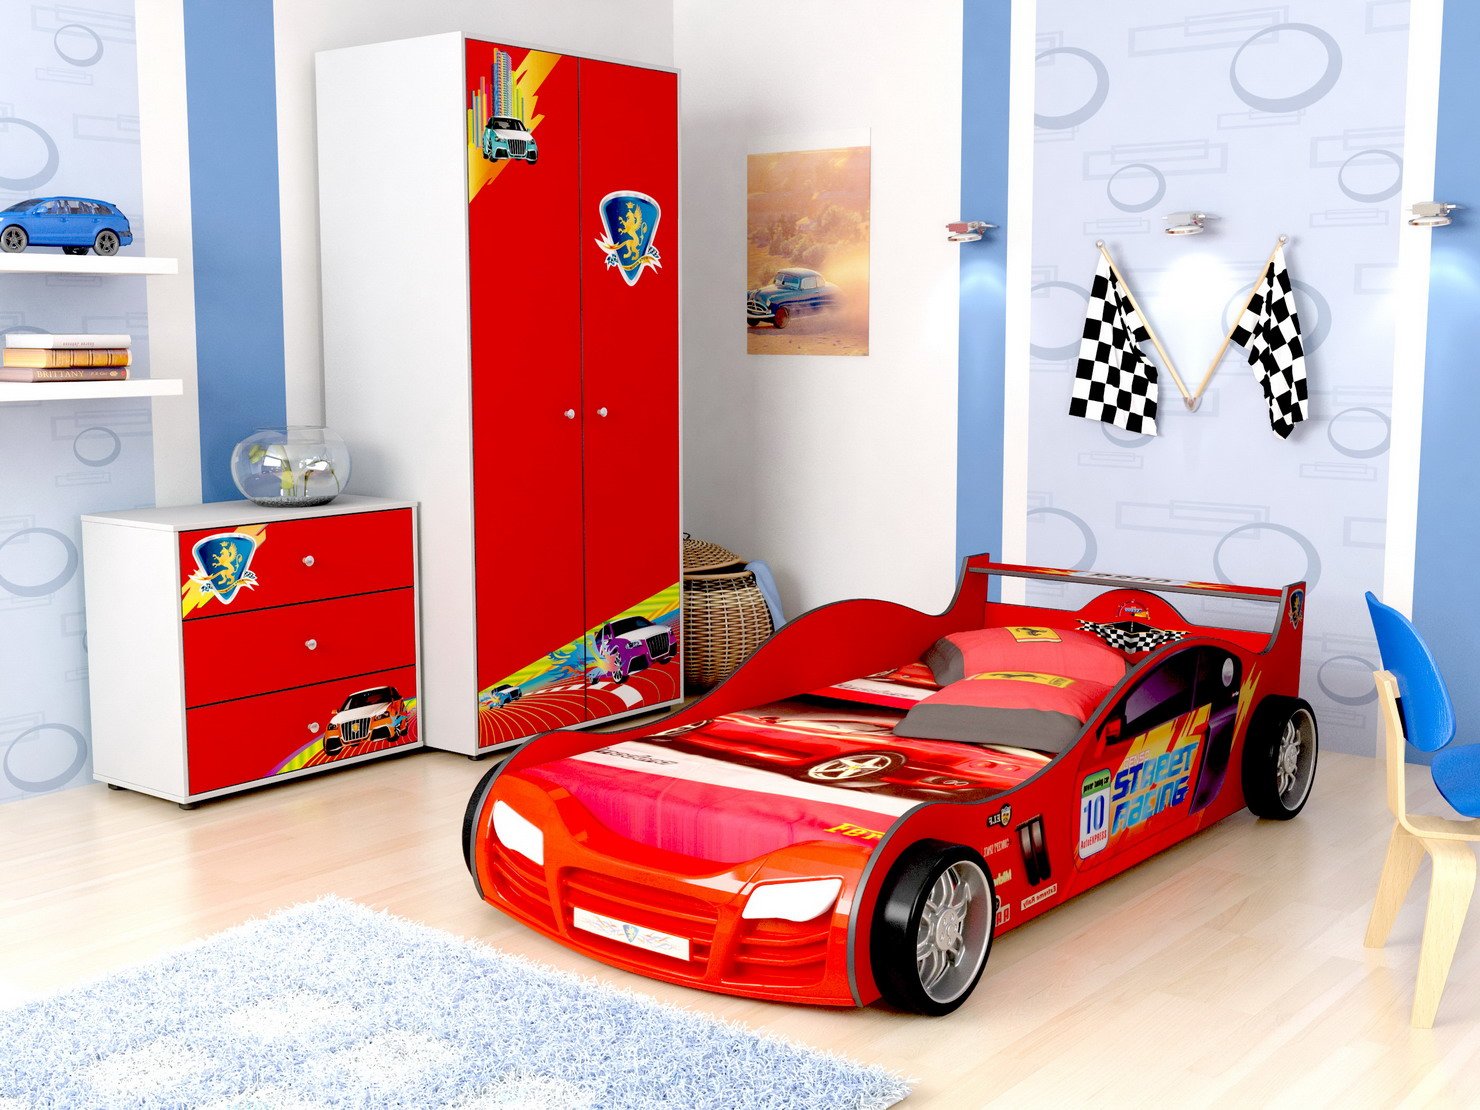 Кровать машина R800, как один из вариантов кровати машинки детской.